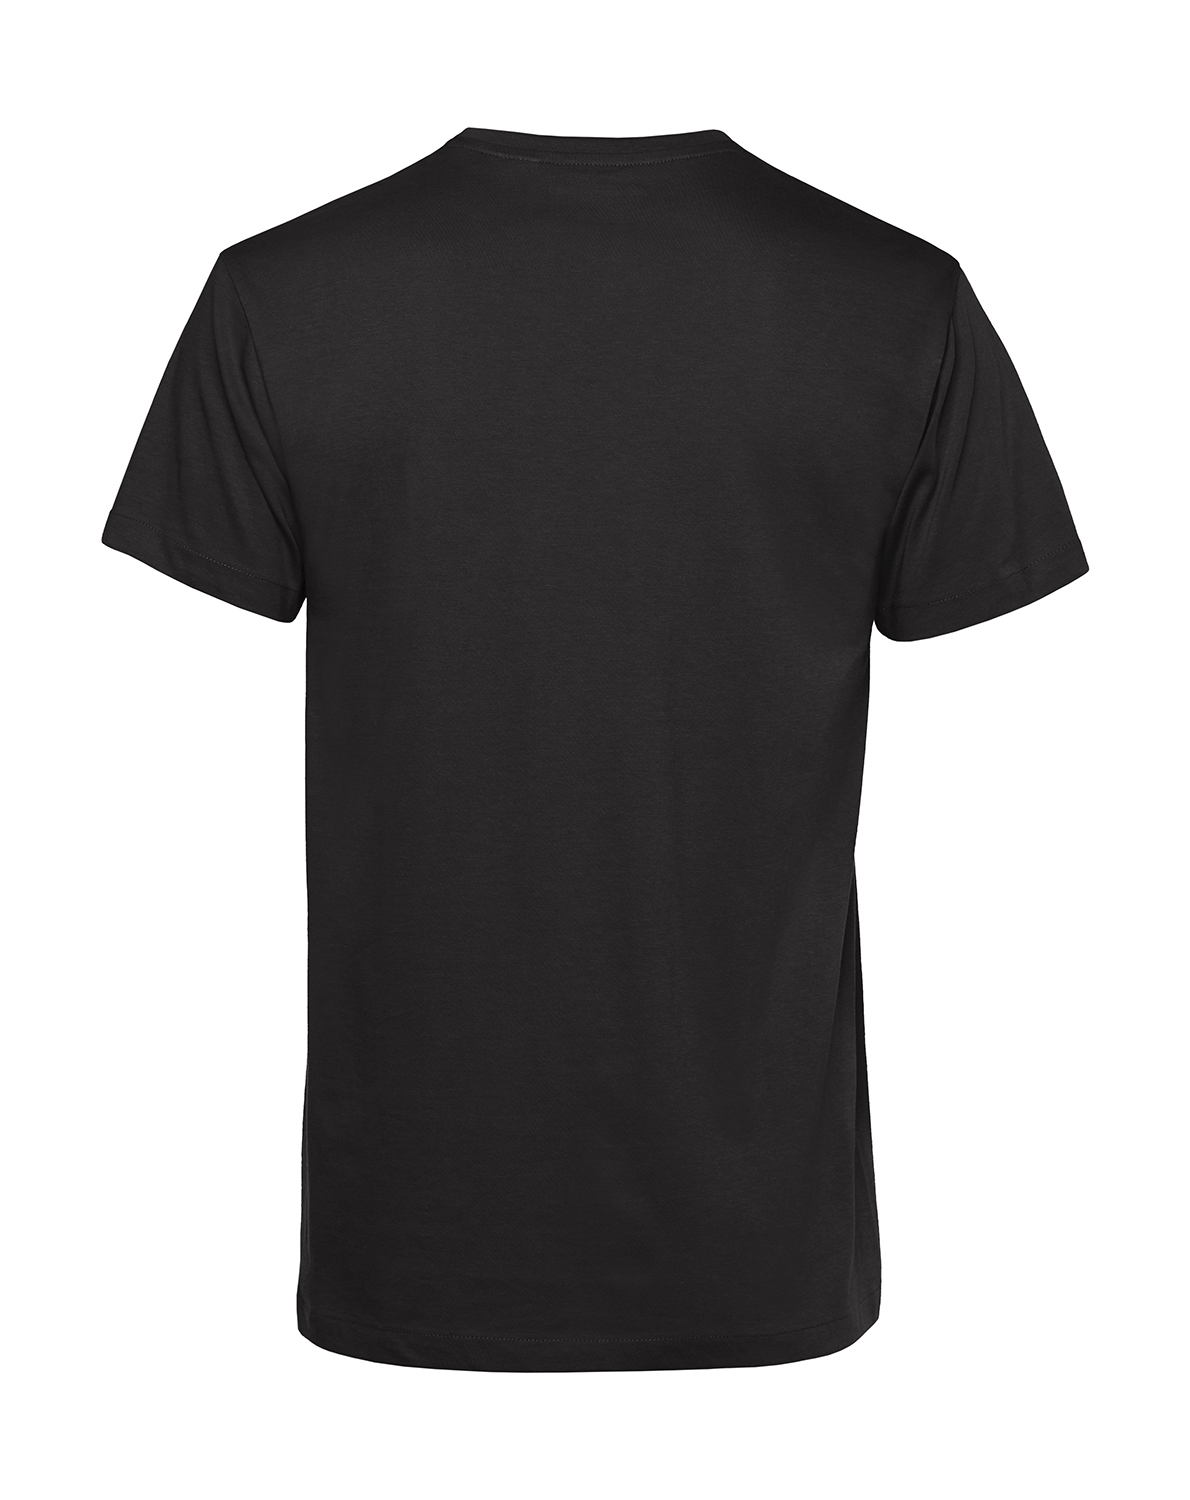 Nachhaltiges T-Shirt Herren 2Takt - Ganze Tankfüllung Schwalbe